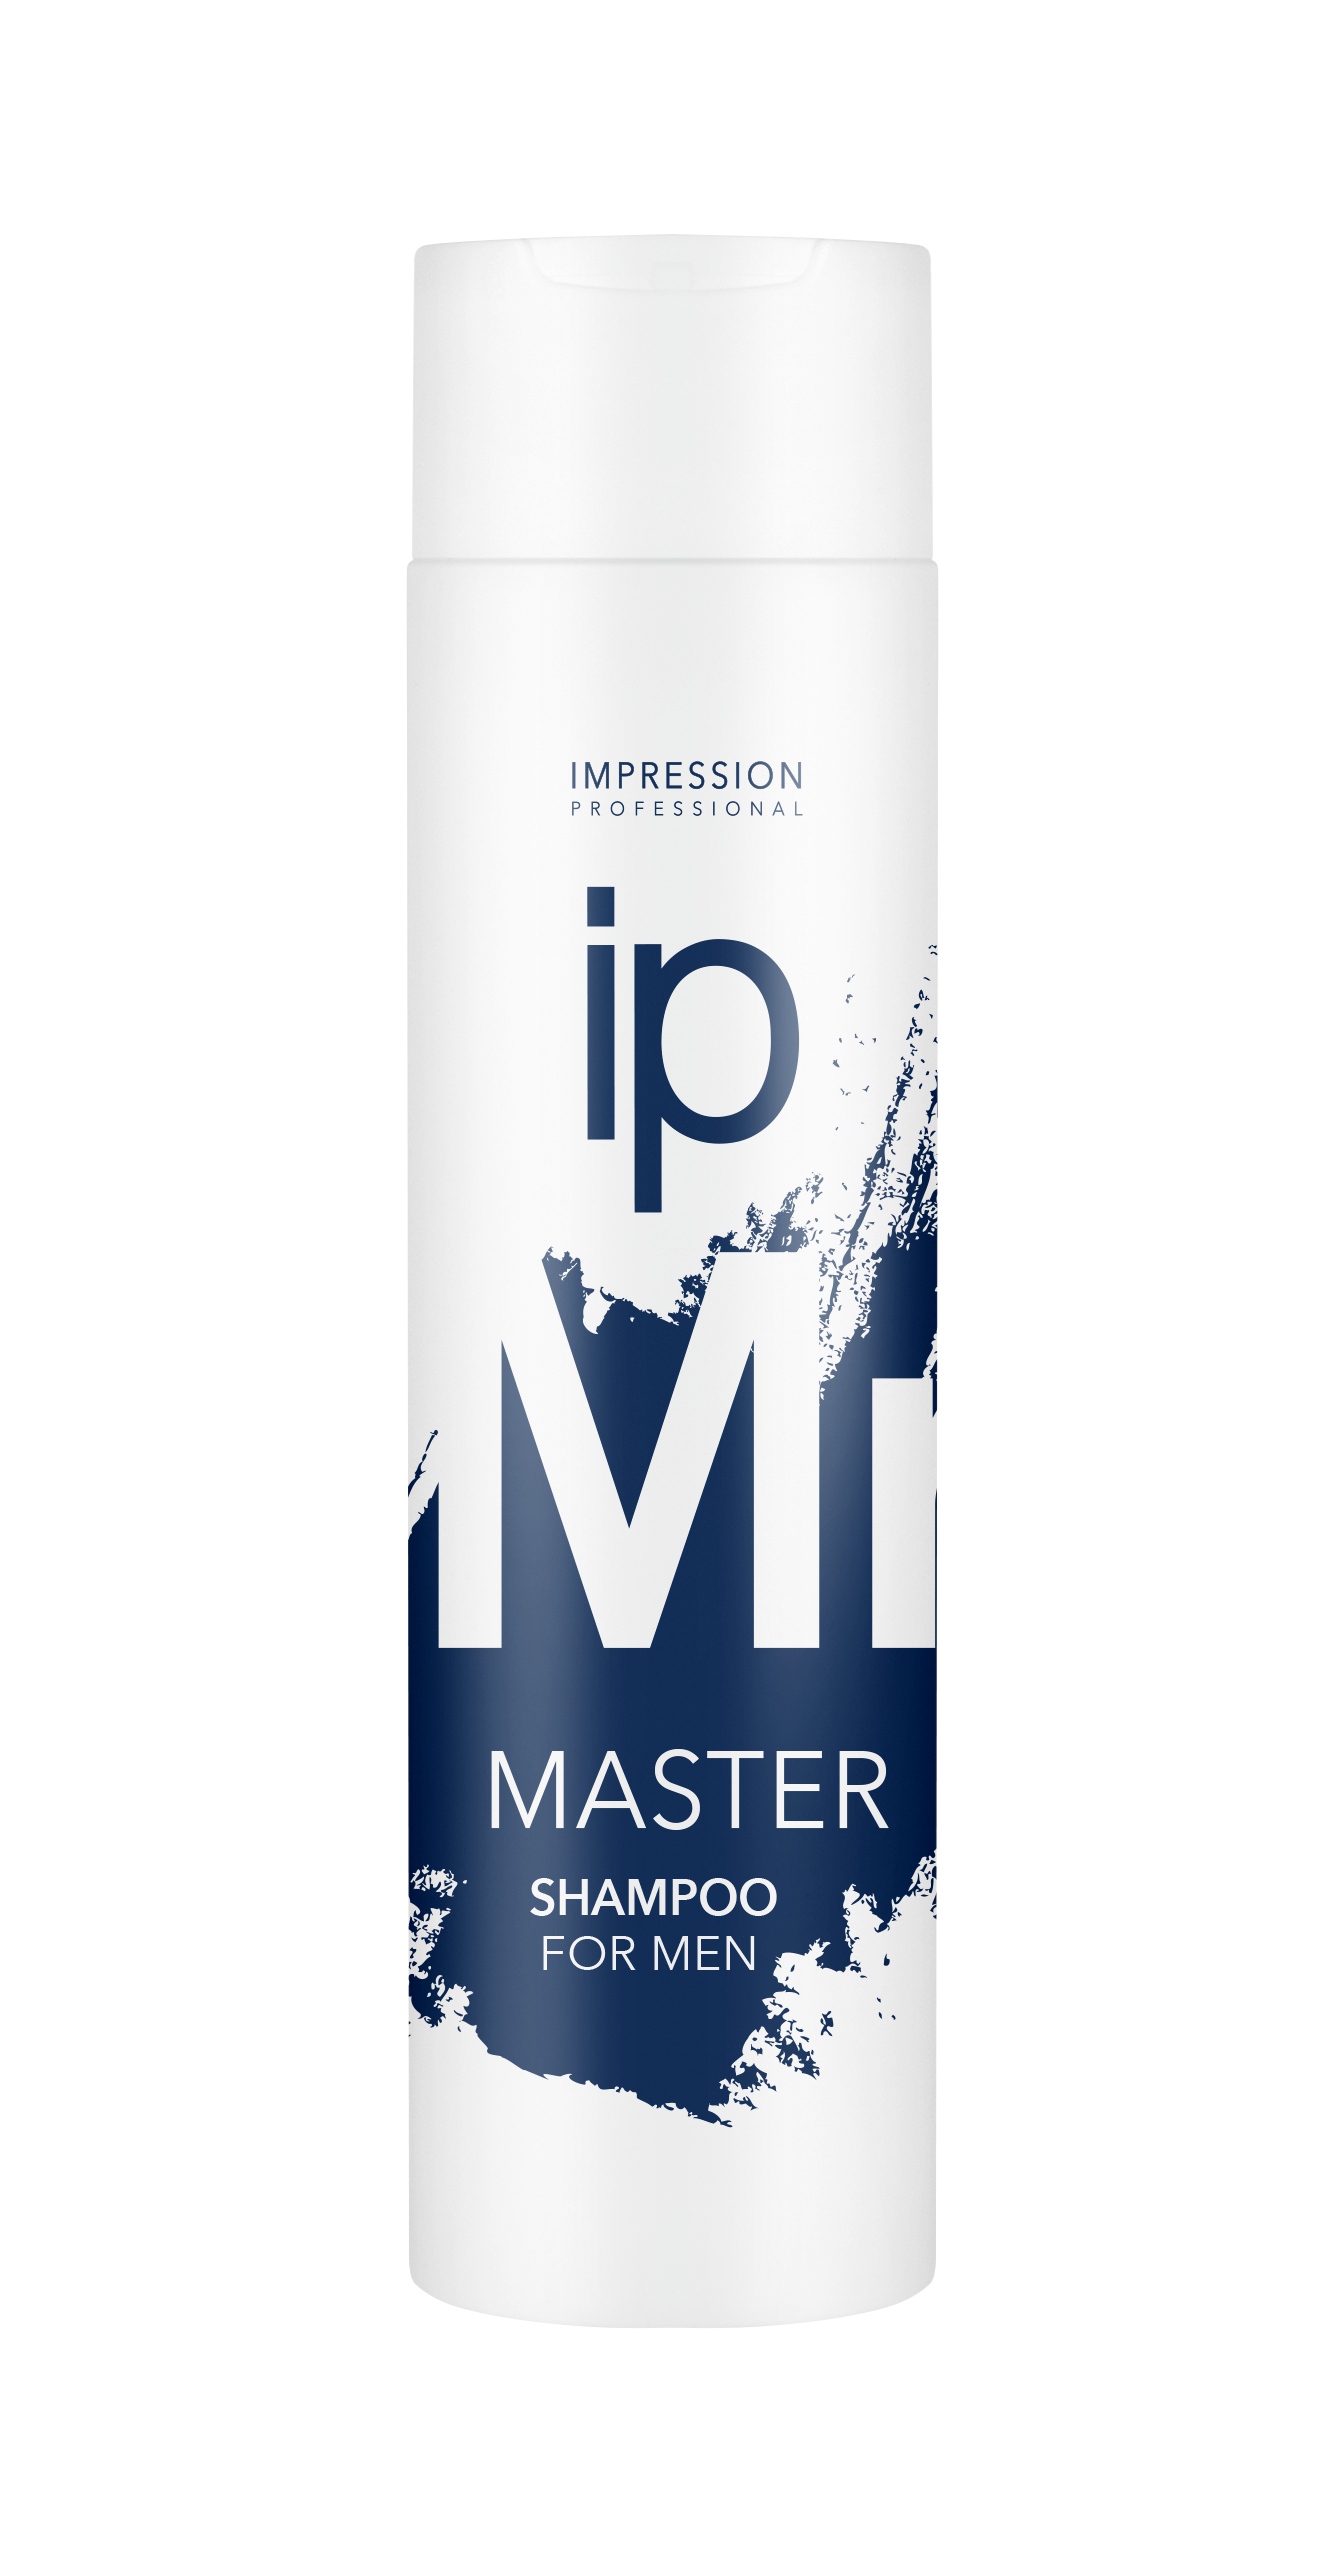 Шампунь для волос Impression Professional Master для мужчин 250мл - в интернет-магазине tut-beauty.by